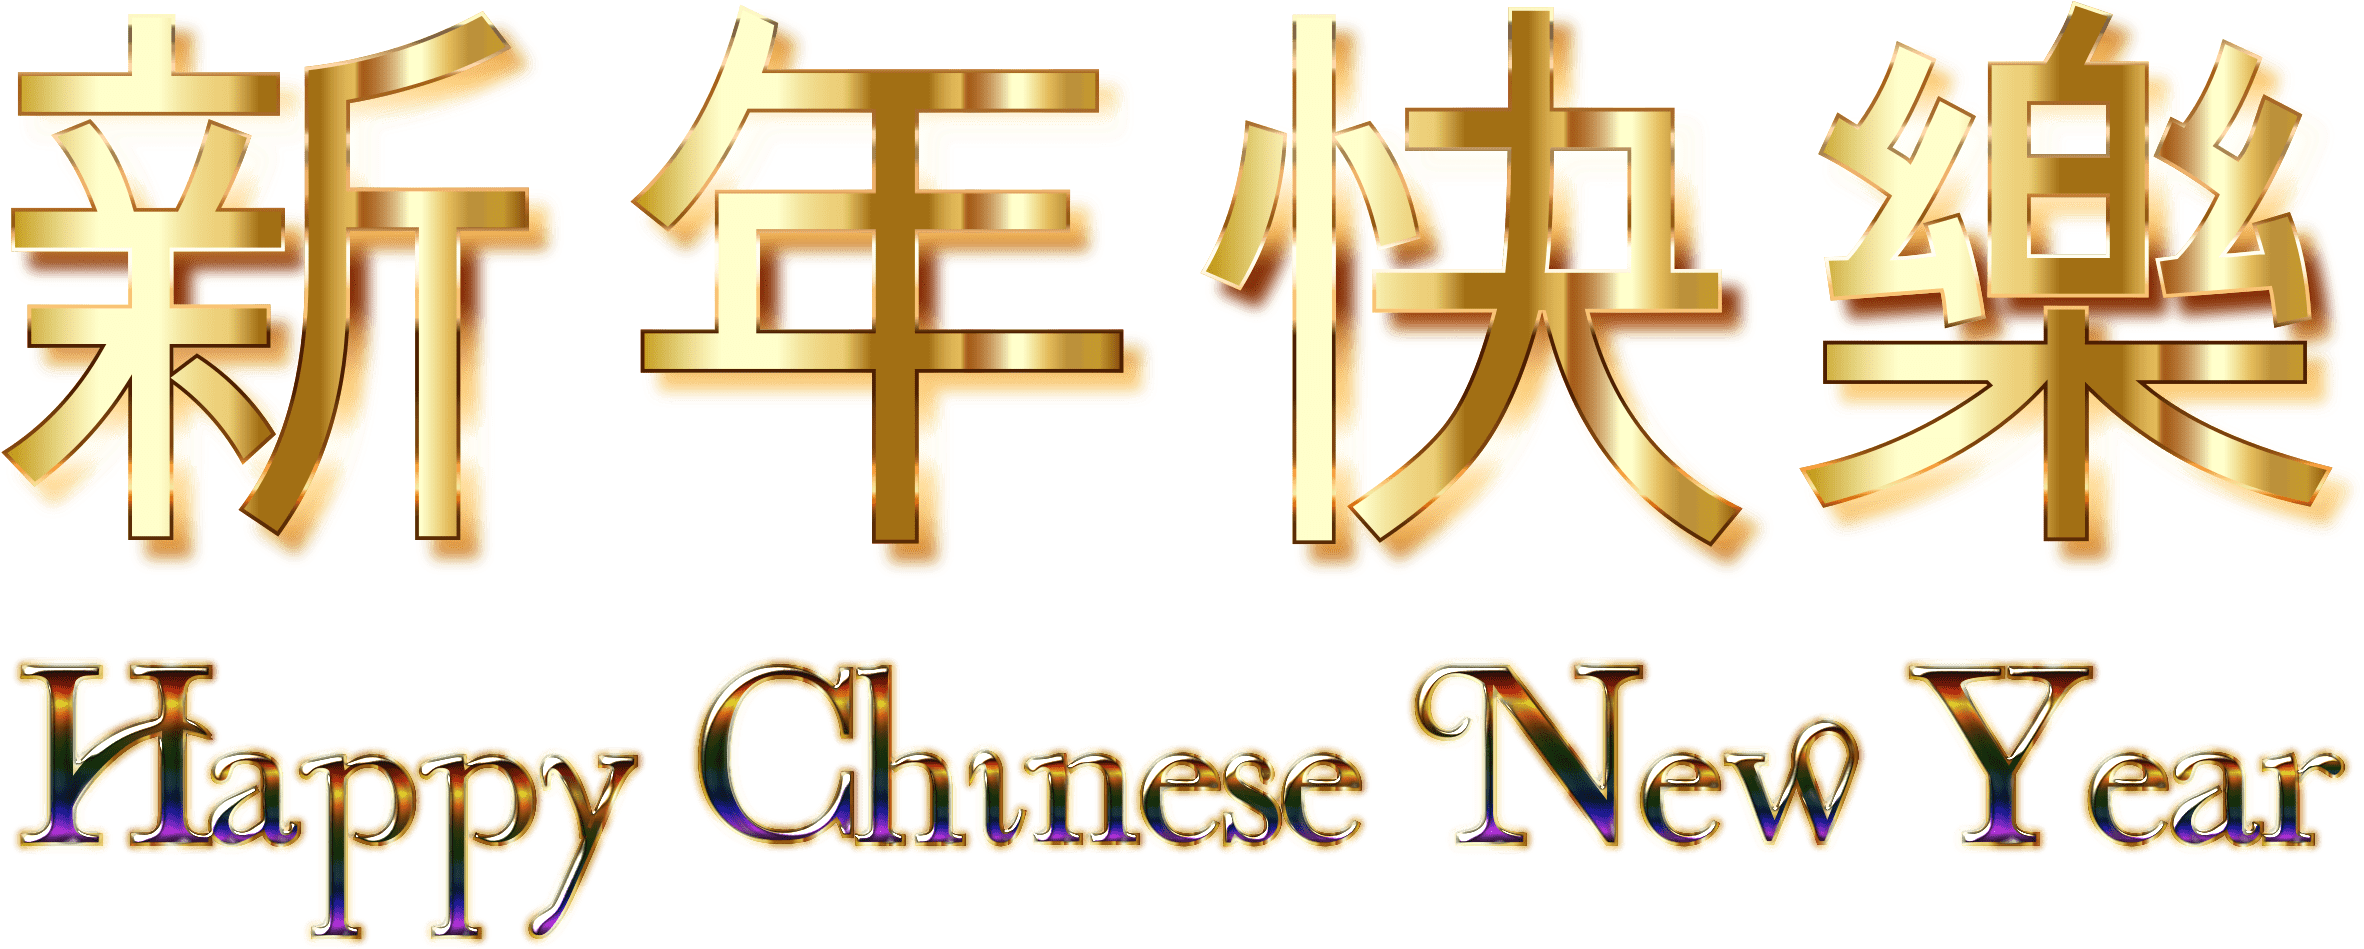 Chúc mừng năm mới và năm mới của Trung Quốc